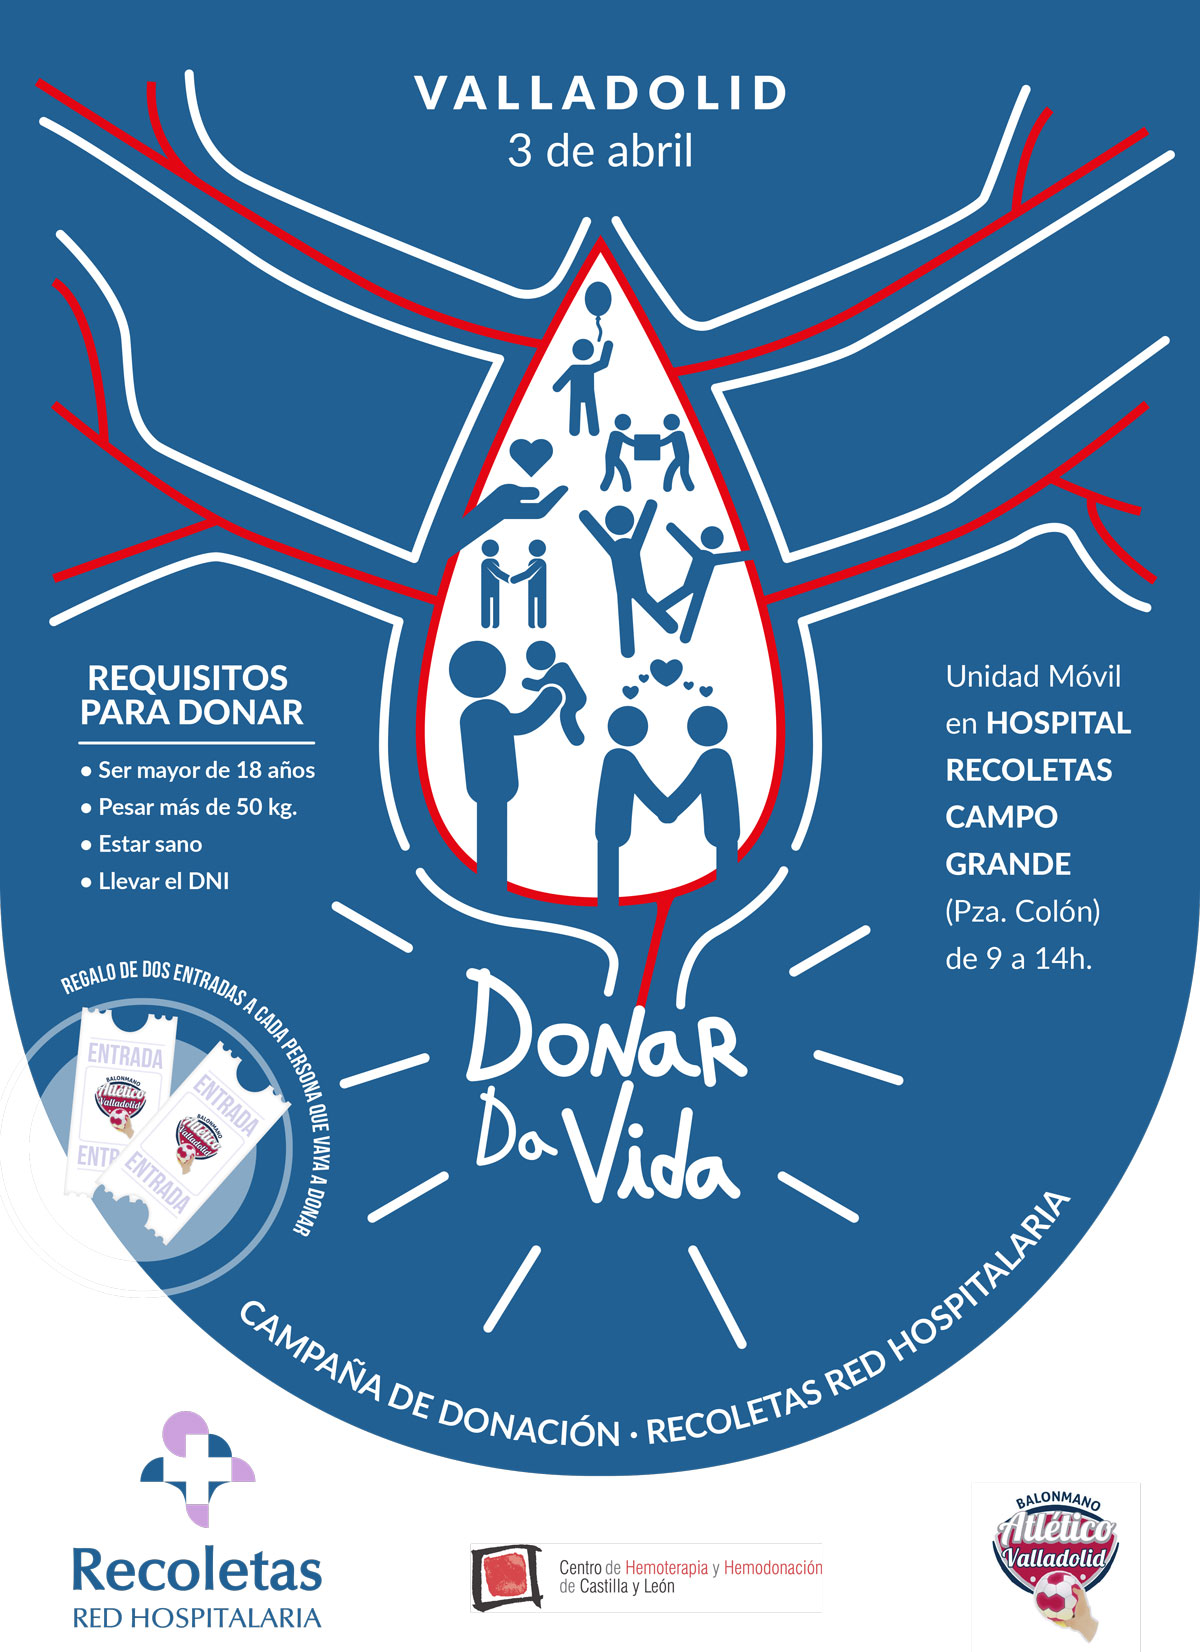 Atlético Valladolid y Recoletas Red Hospitalaria lanzan la campaña ‘Donar da vida’ para animar a la sociedad a donar sangre | Galería 1 / 1